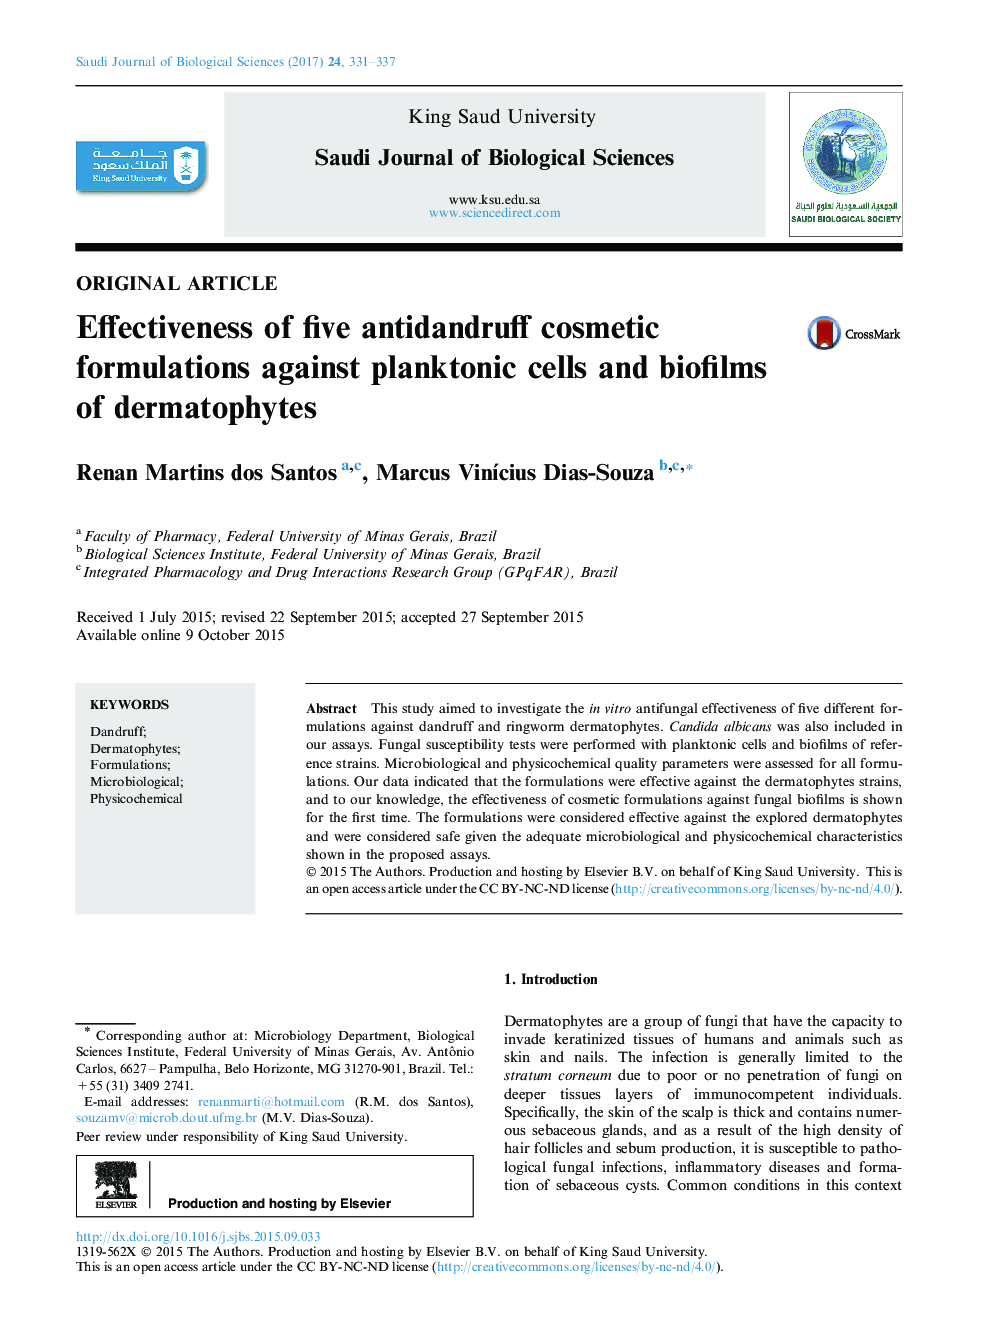 مقاله پژوهشی اثربخشی پنج فرمولاسیون آرایشی ضد شوره در برابر سلول های پلانکتون و زیستفیلم های درماتوفیت 